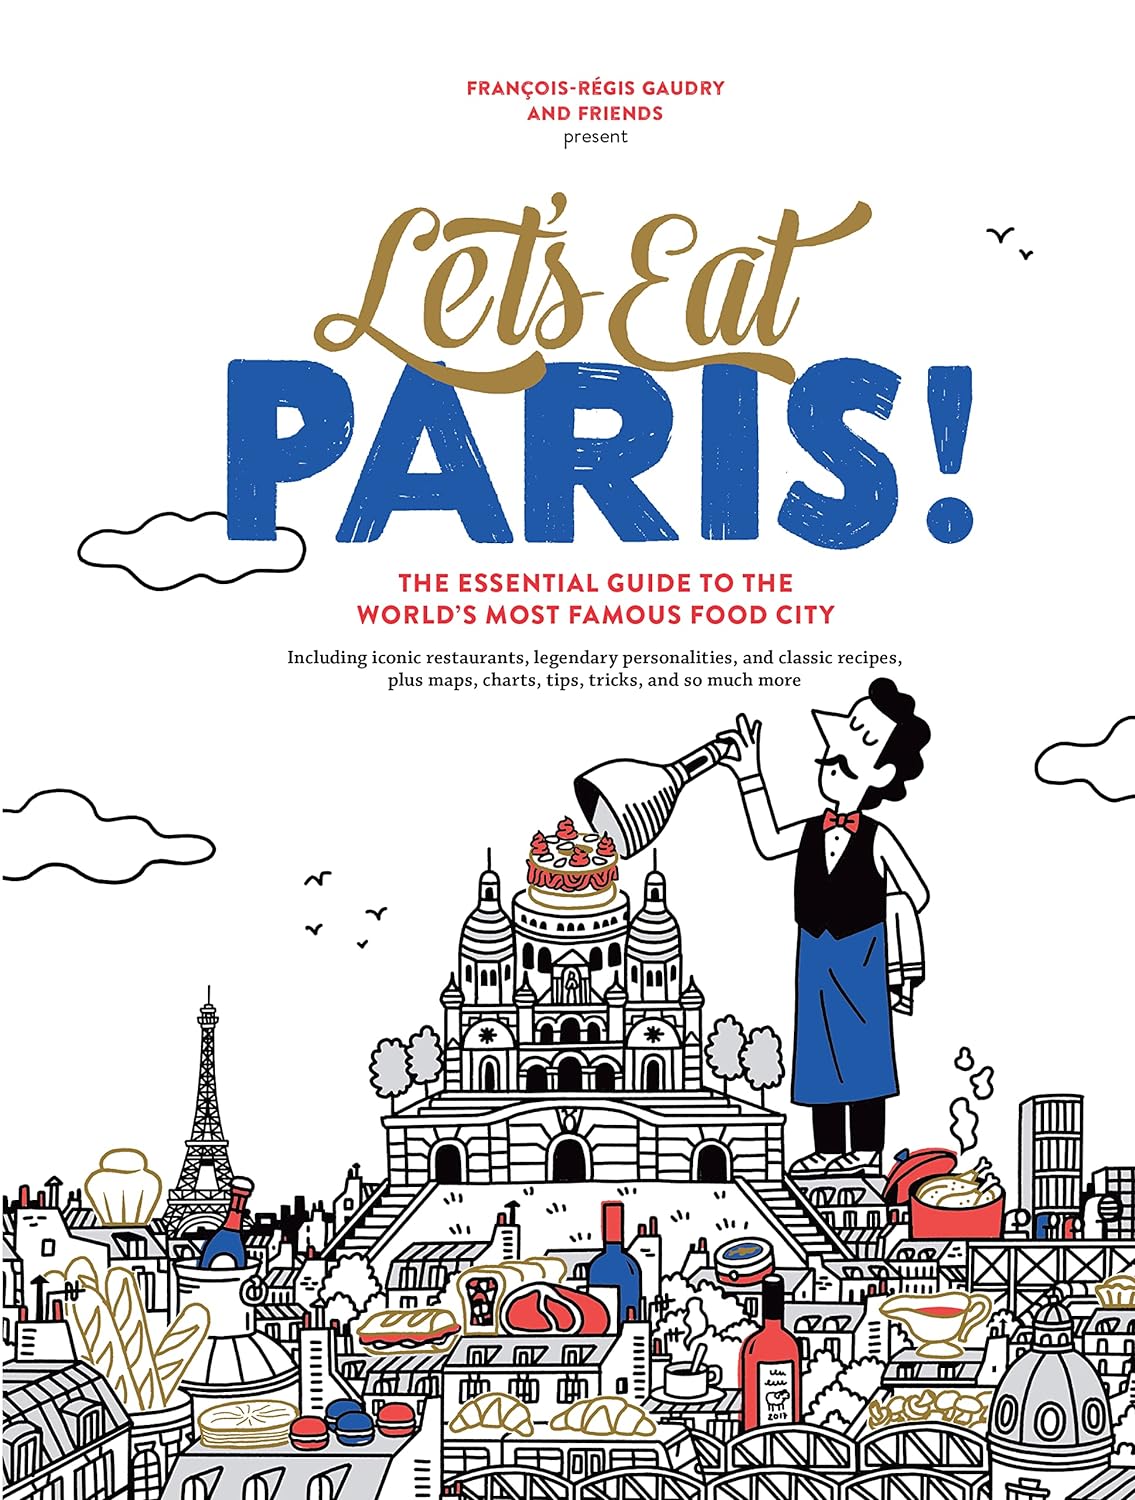 Let's Eat Paris!: The Essential Guide to the World's Most Famous Food City ( François-Régis Gaudry)